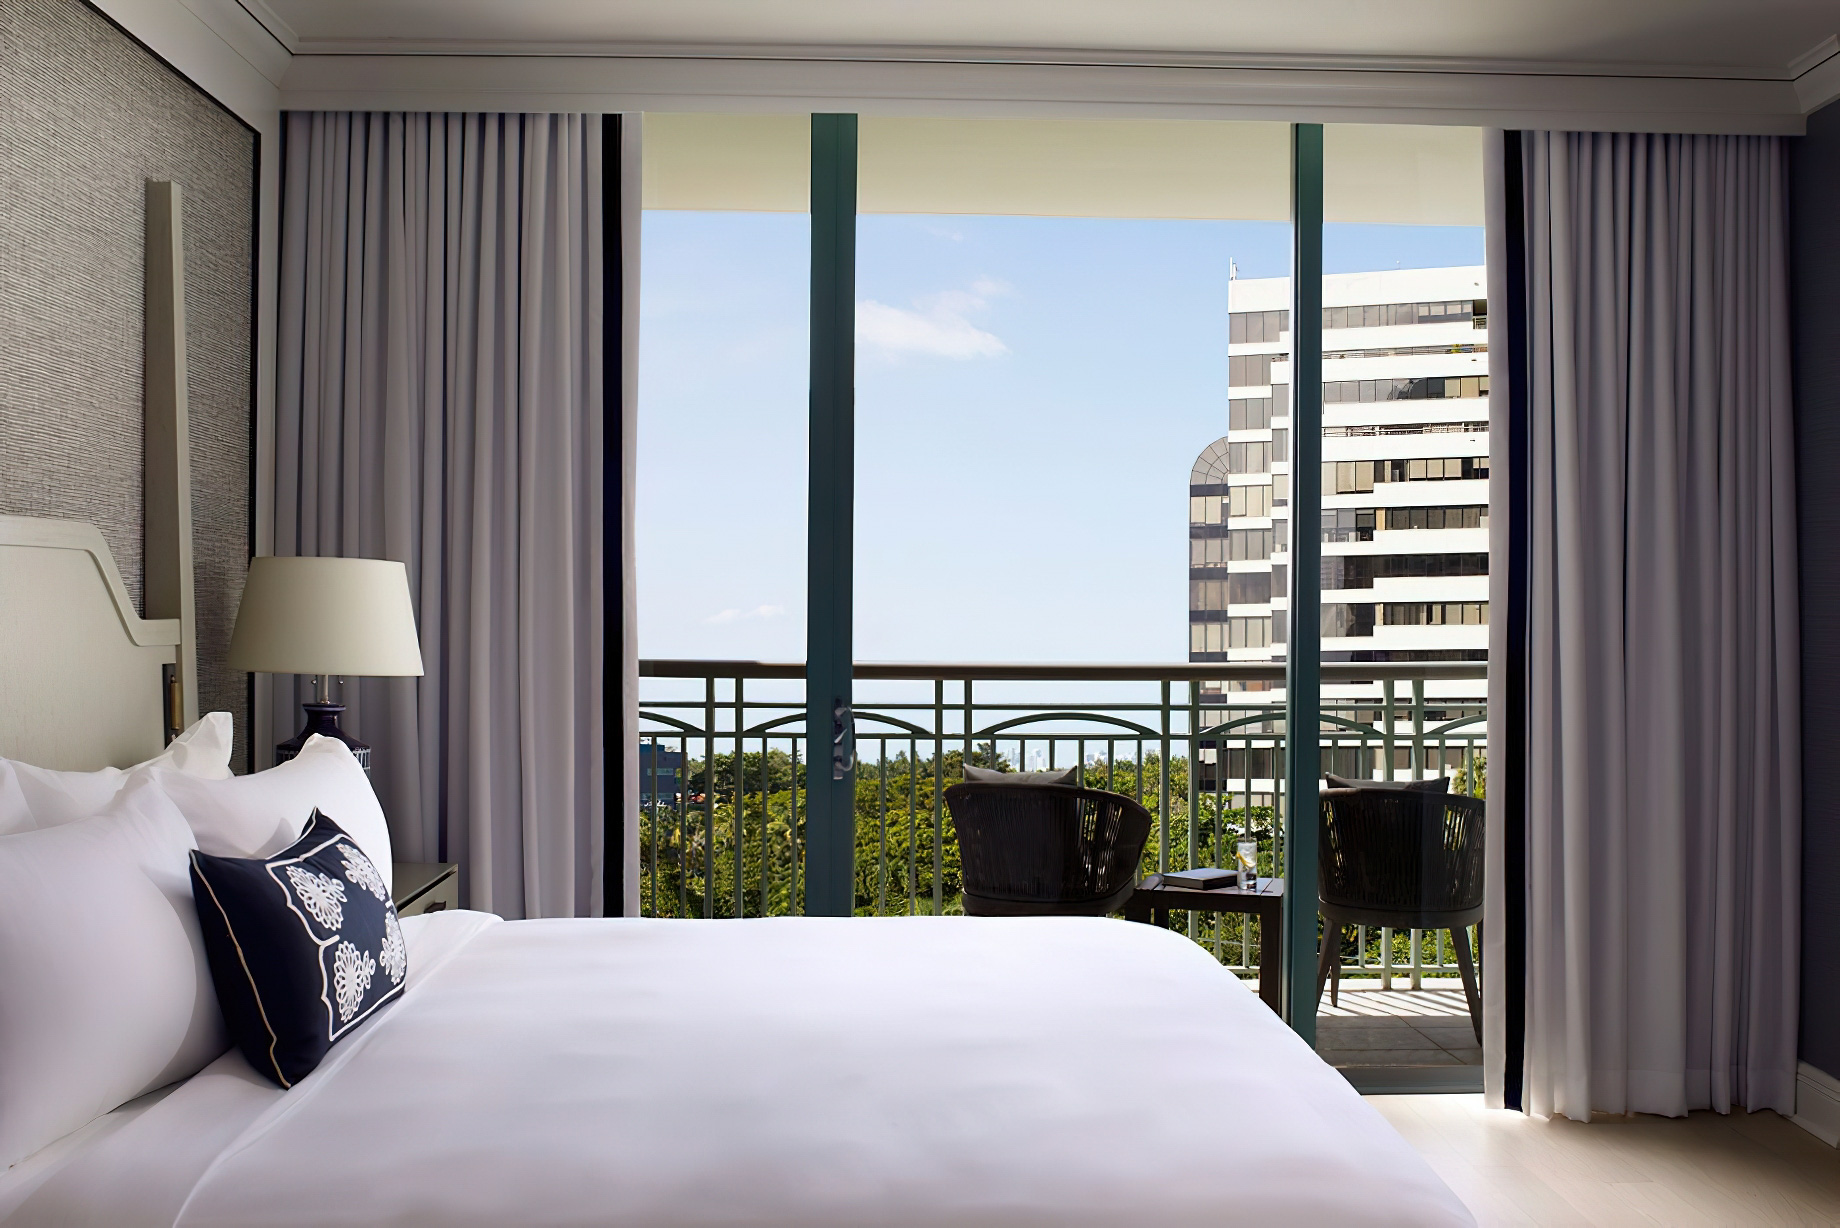 The Ritz-Carlton Coconut Grove, Miami Hotel – Miami, FL, USA – City View Suite Interior